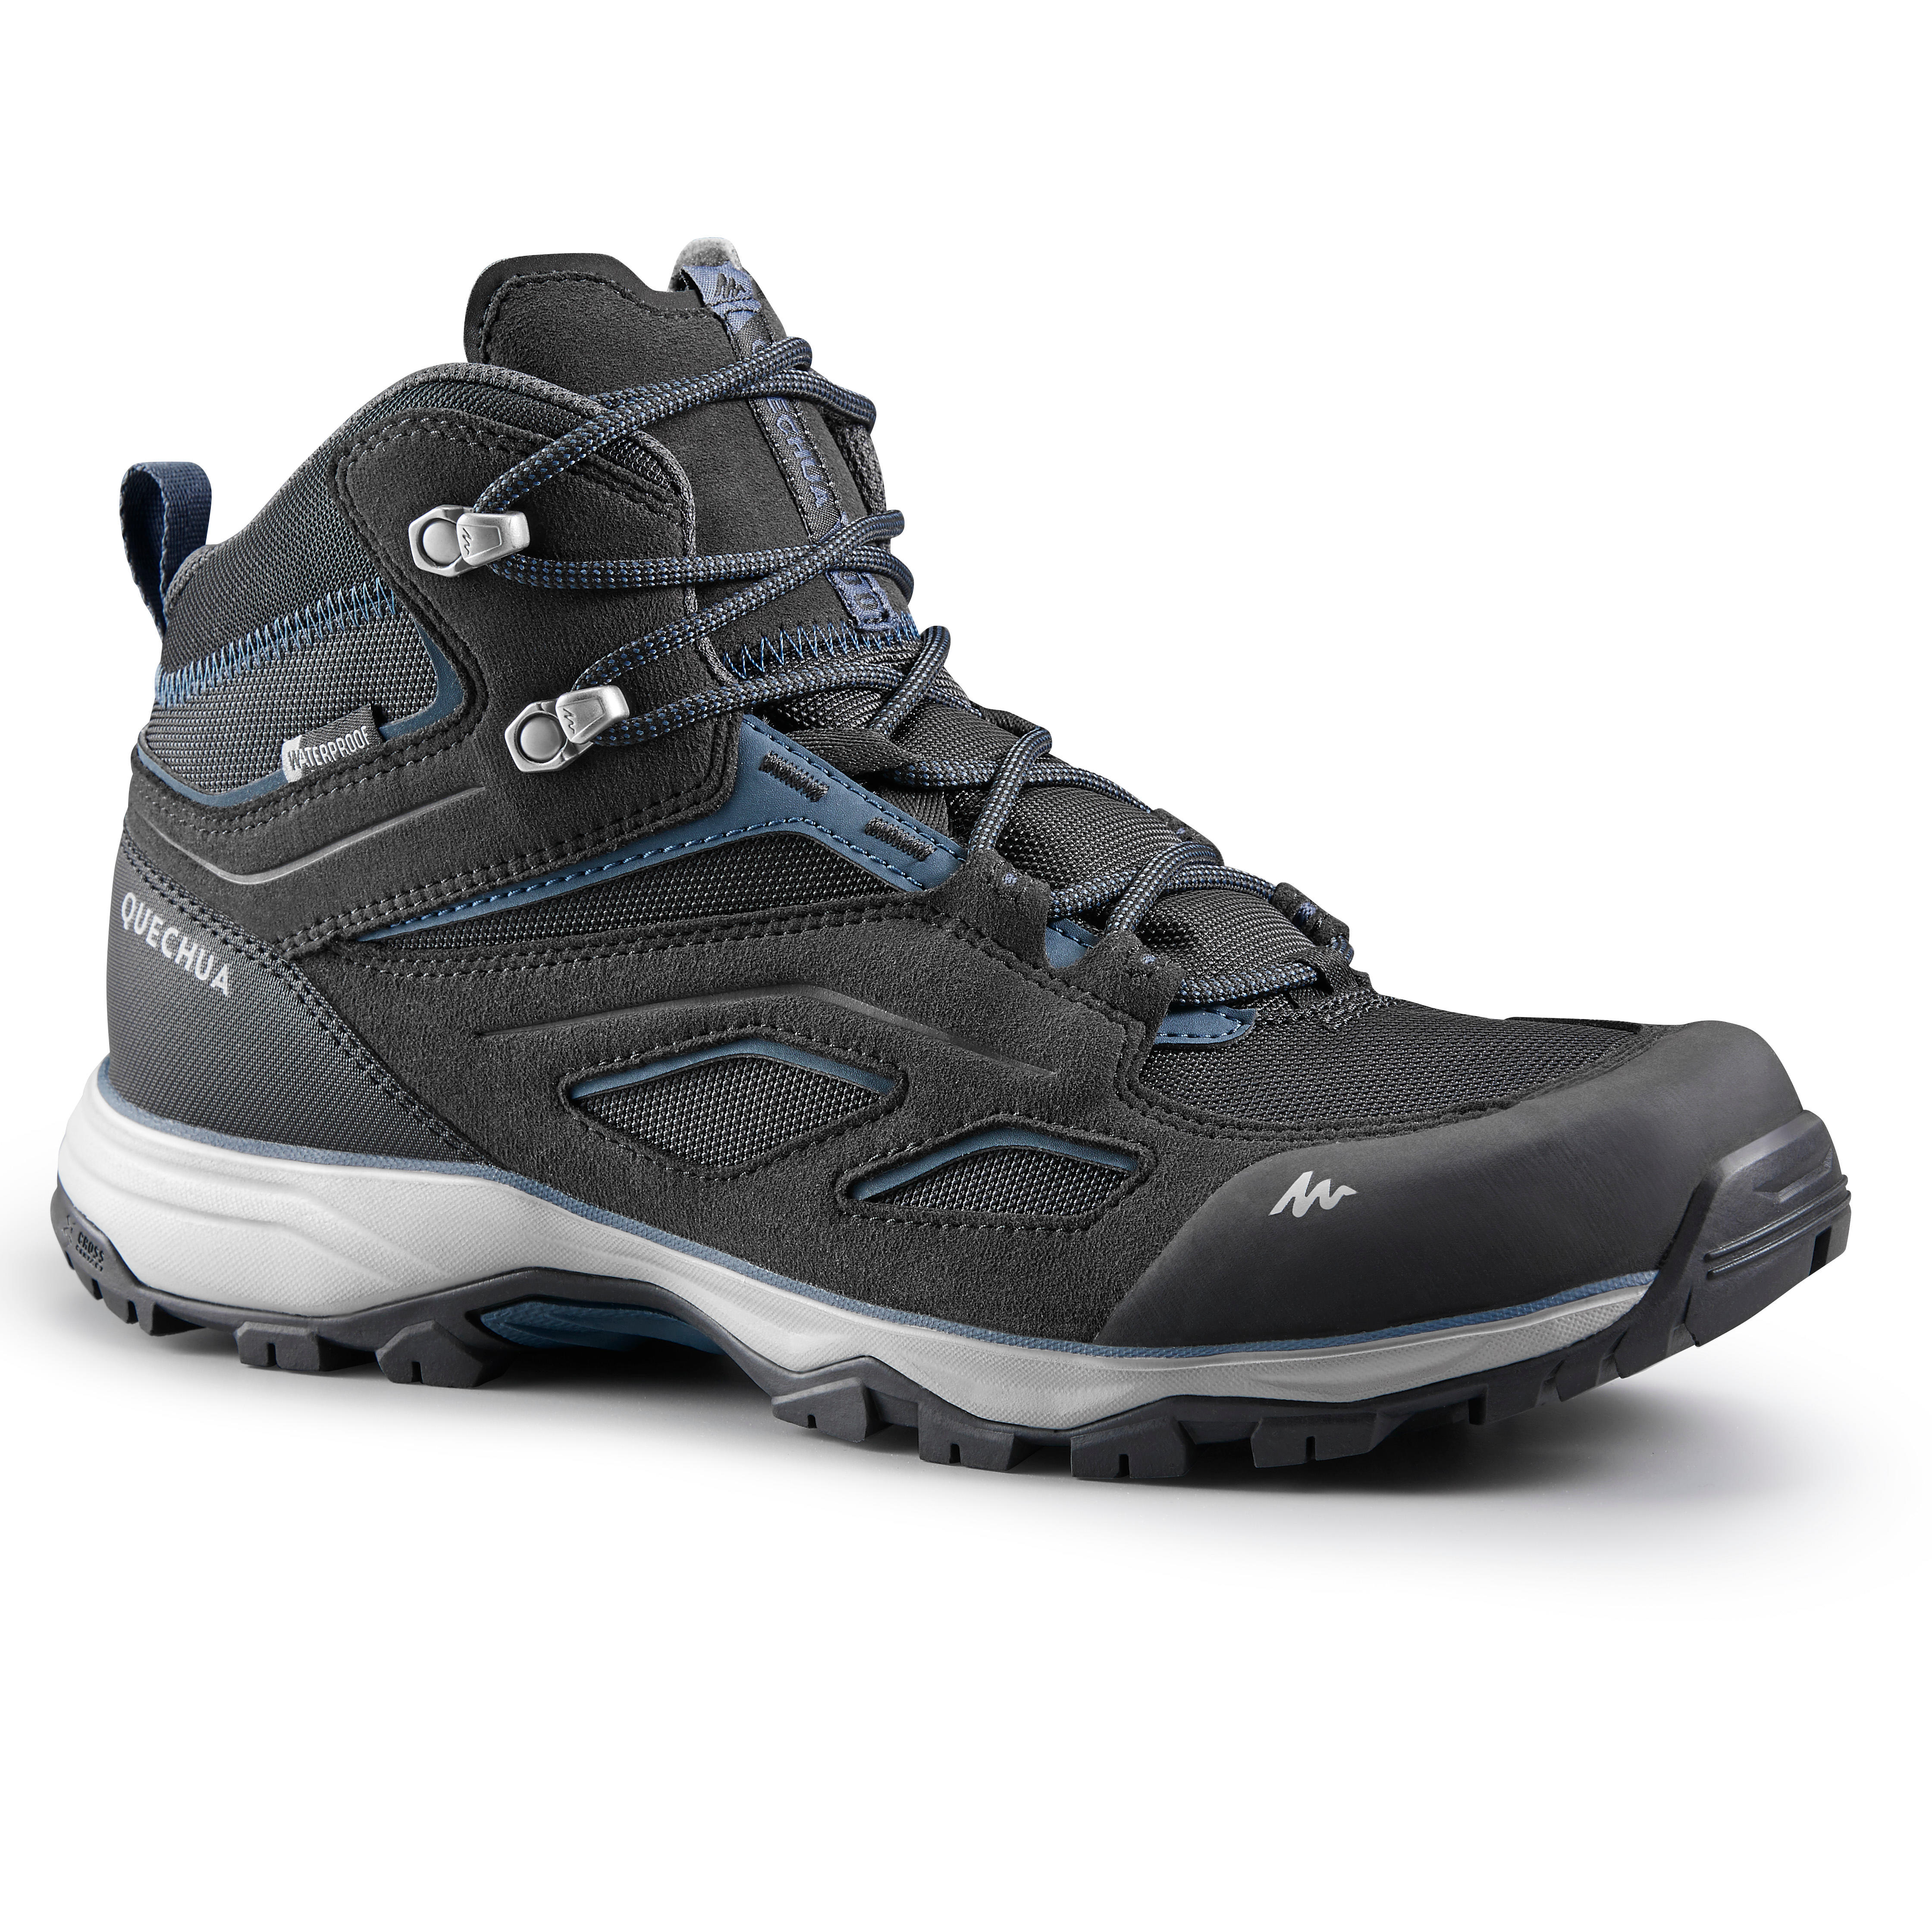 waterproof trekking shoes for men